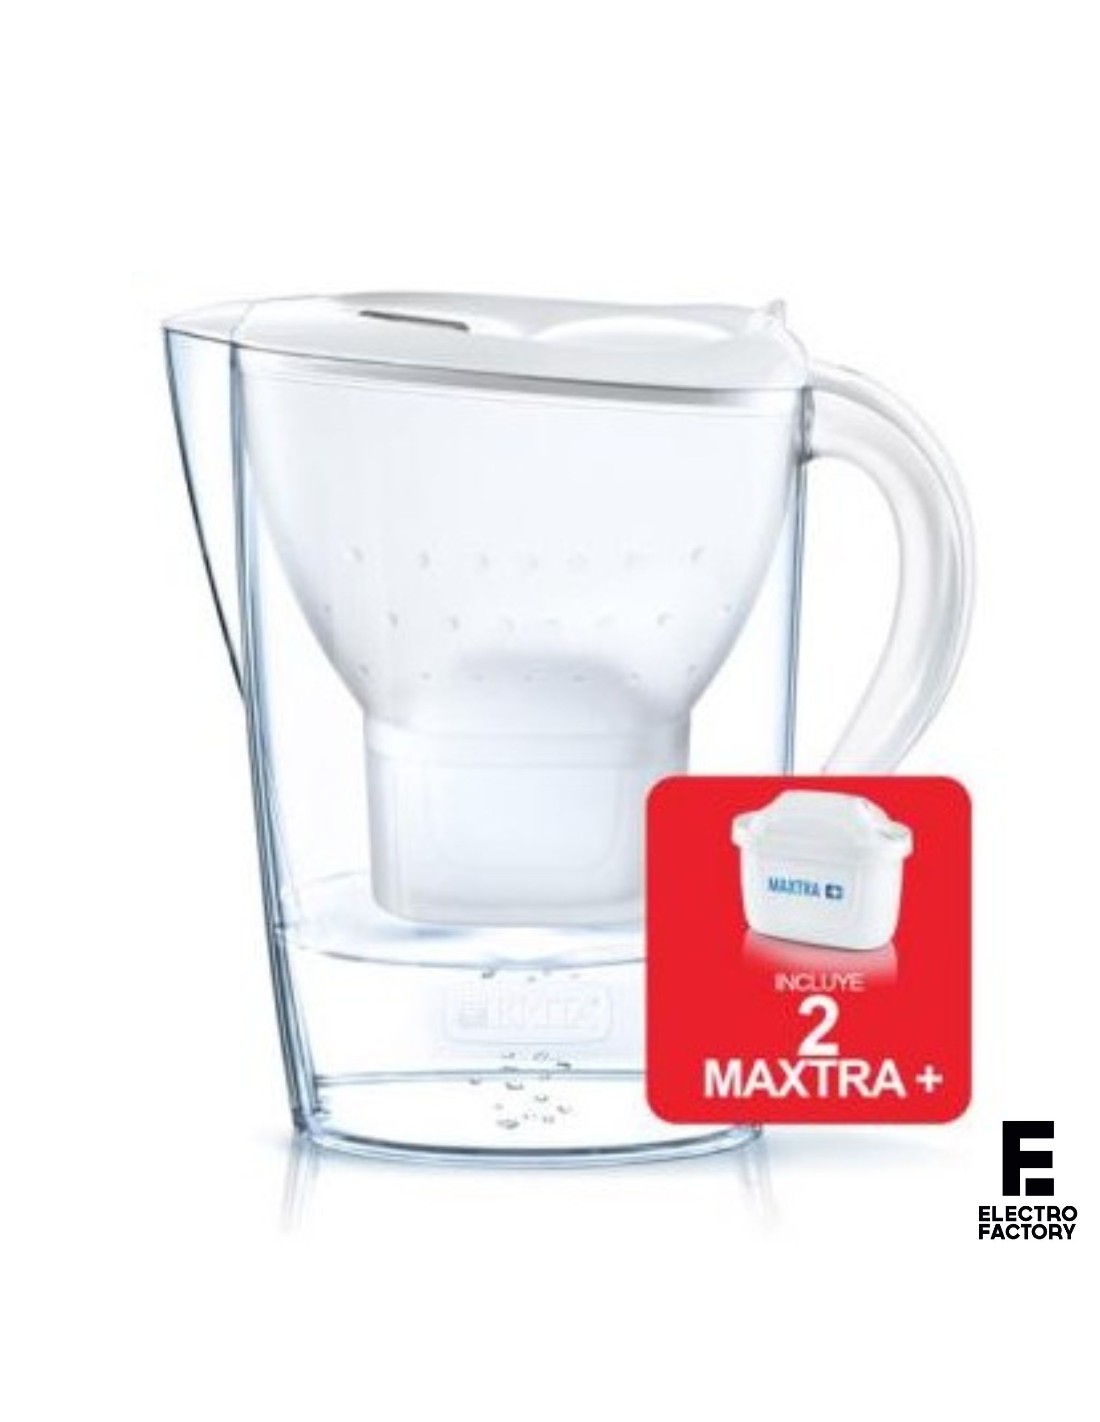 Jarra Brita Marella 1046224 Blanca, 2 filtros Maxtra y Botella térmica acero